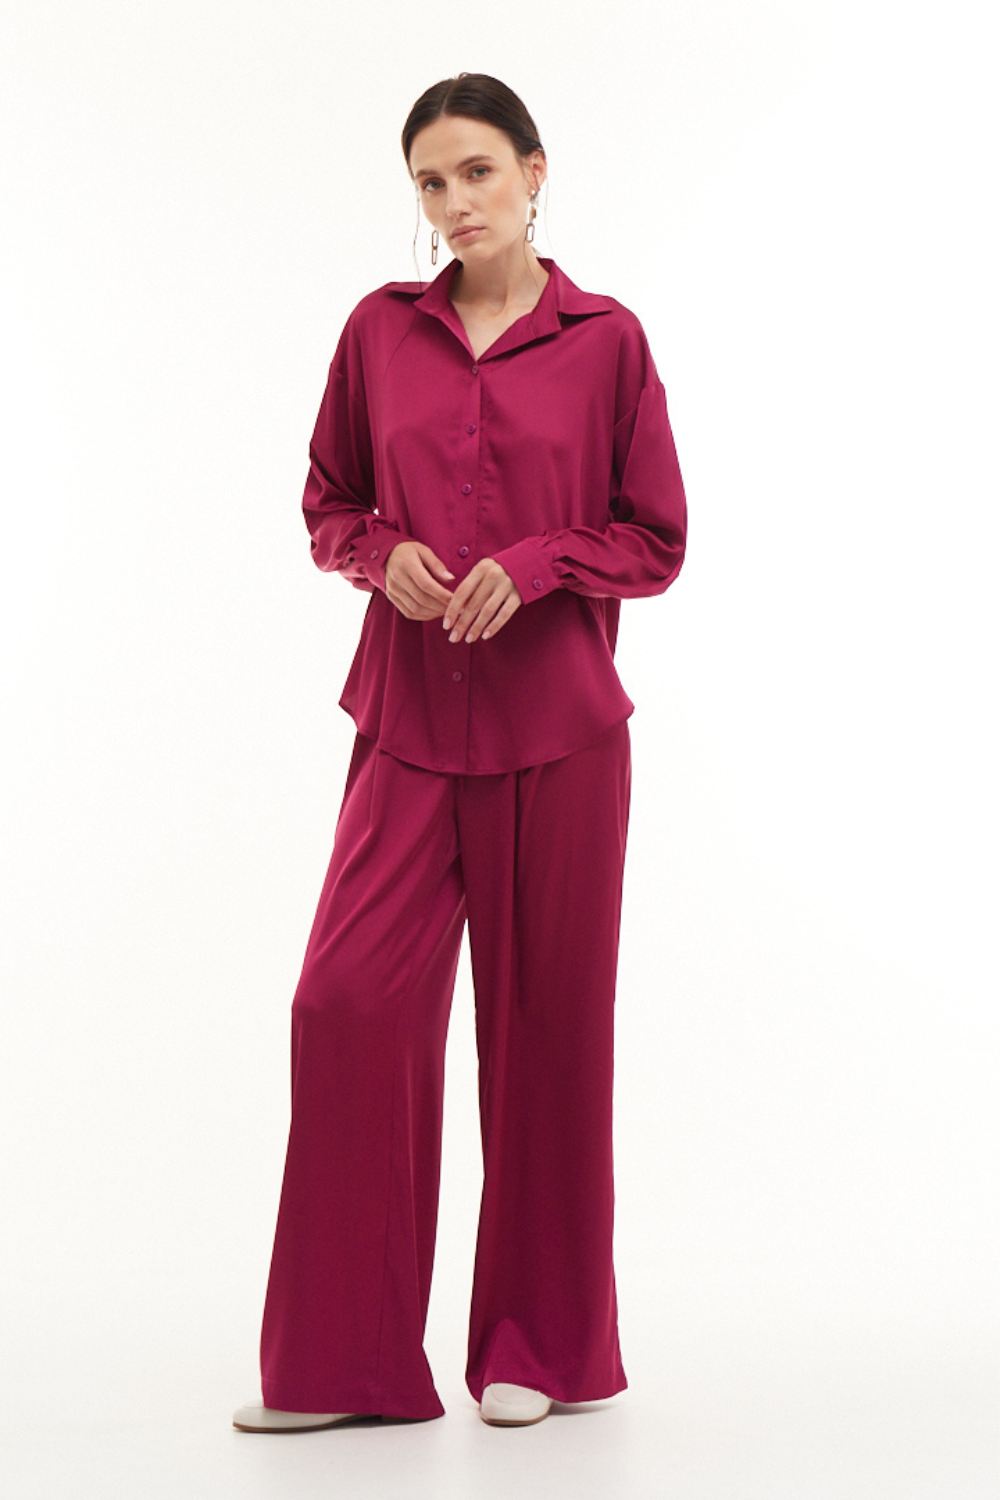 Kalhoty BASIC růžové barvy (Mint) 2109